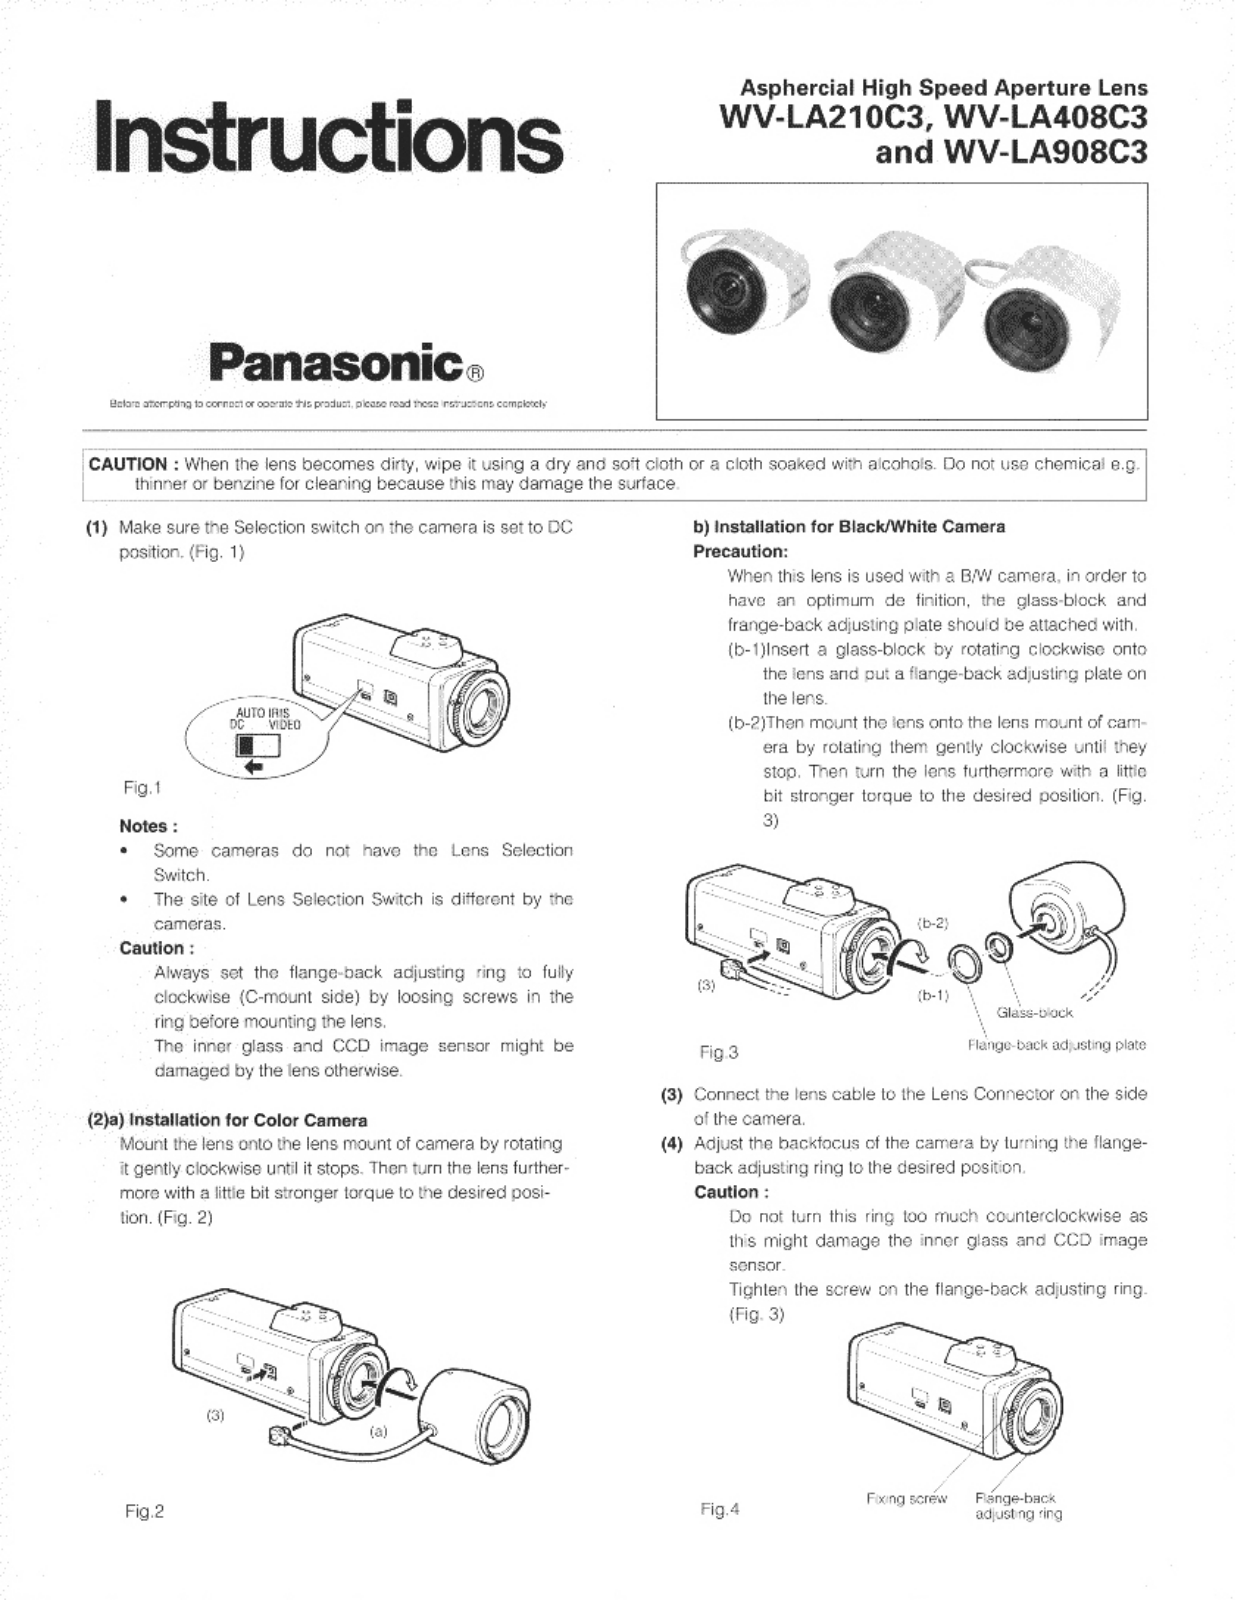 Panasonic WV-LA408C3, WV-LA908C3, WV-LA210C3 User Manual